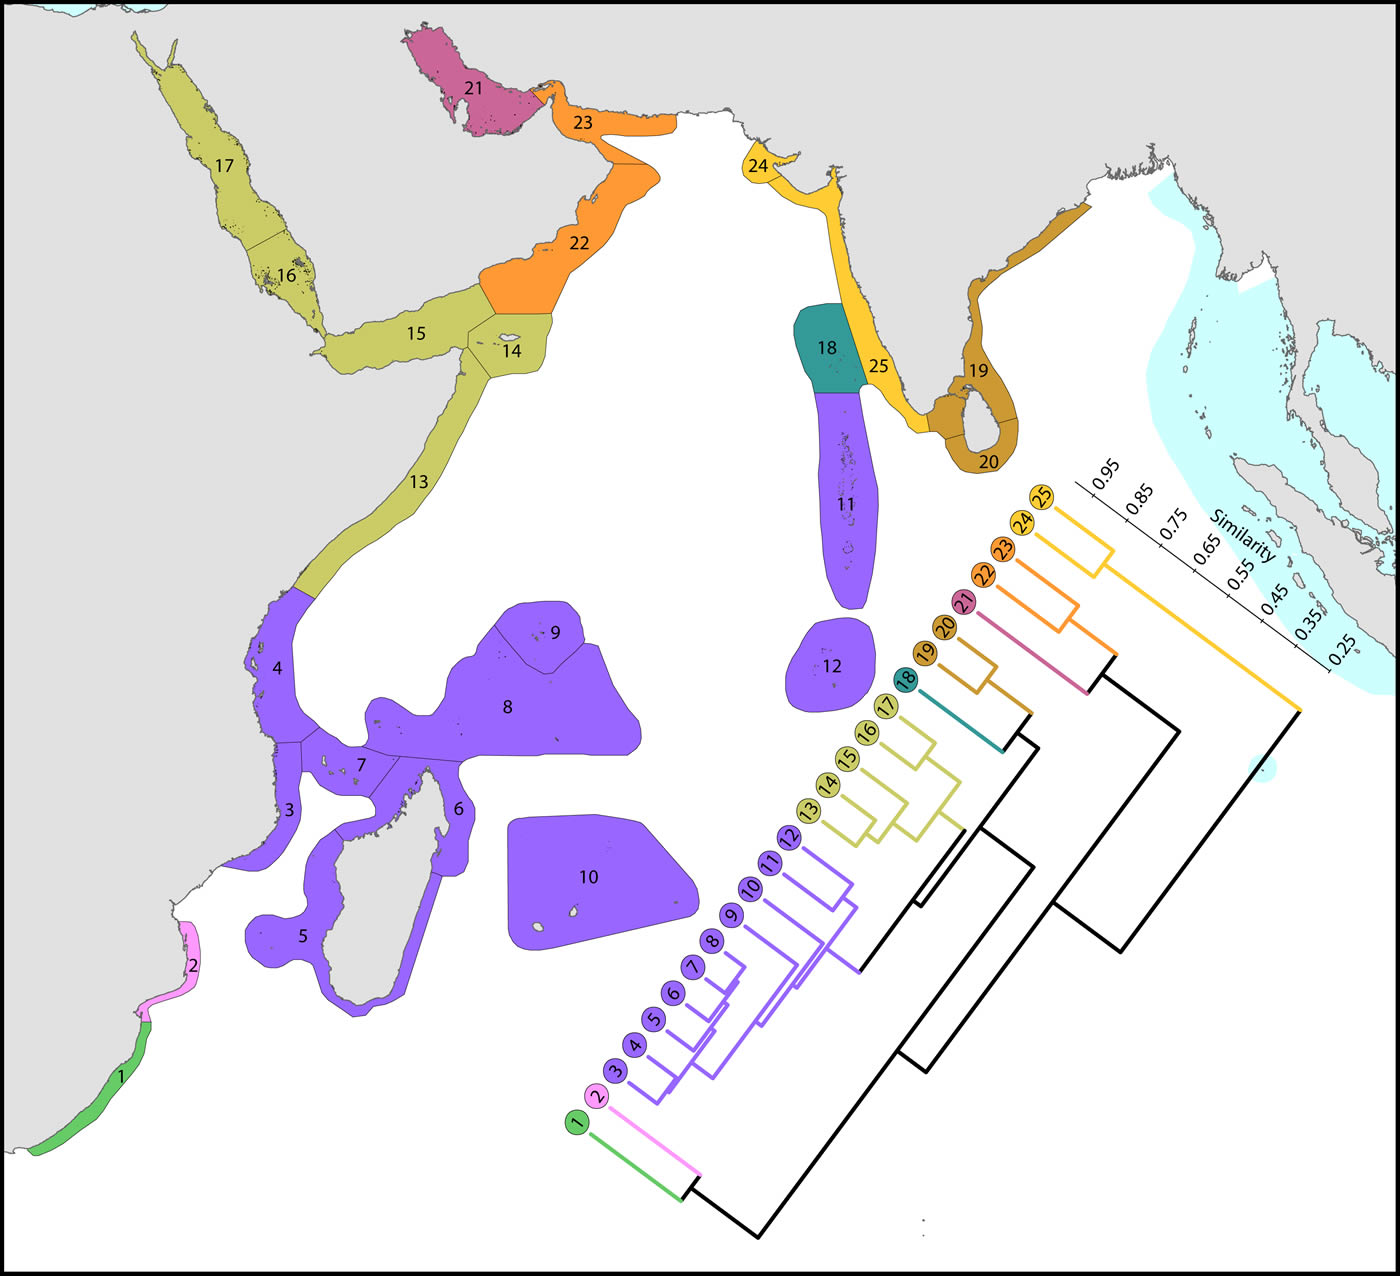 Species affinity western Indian Ocean